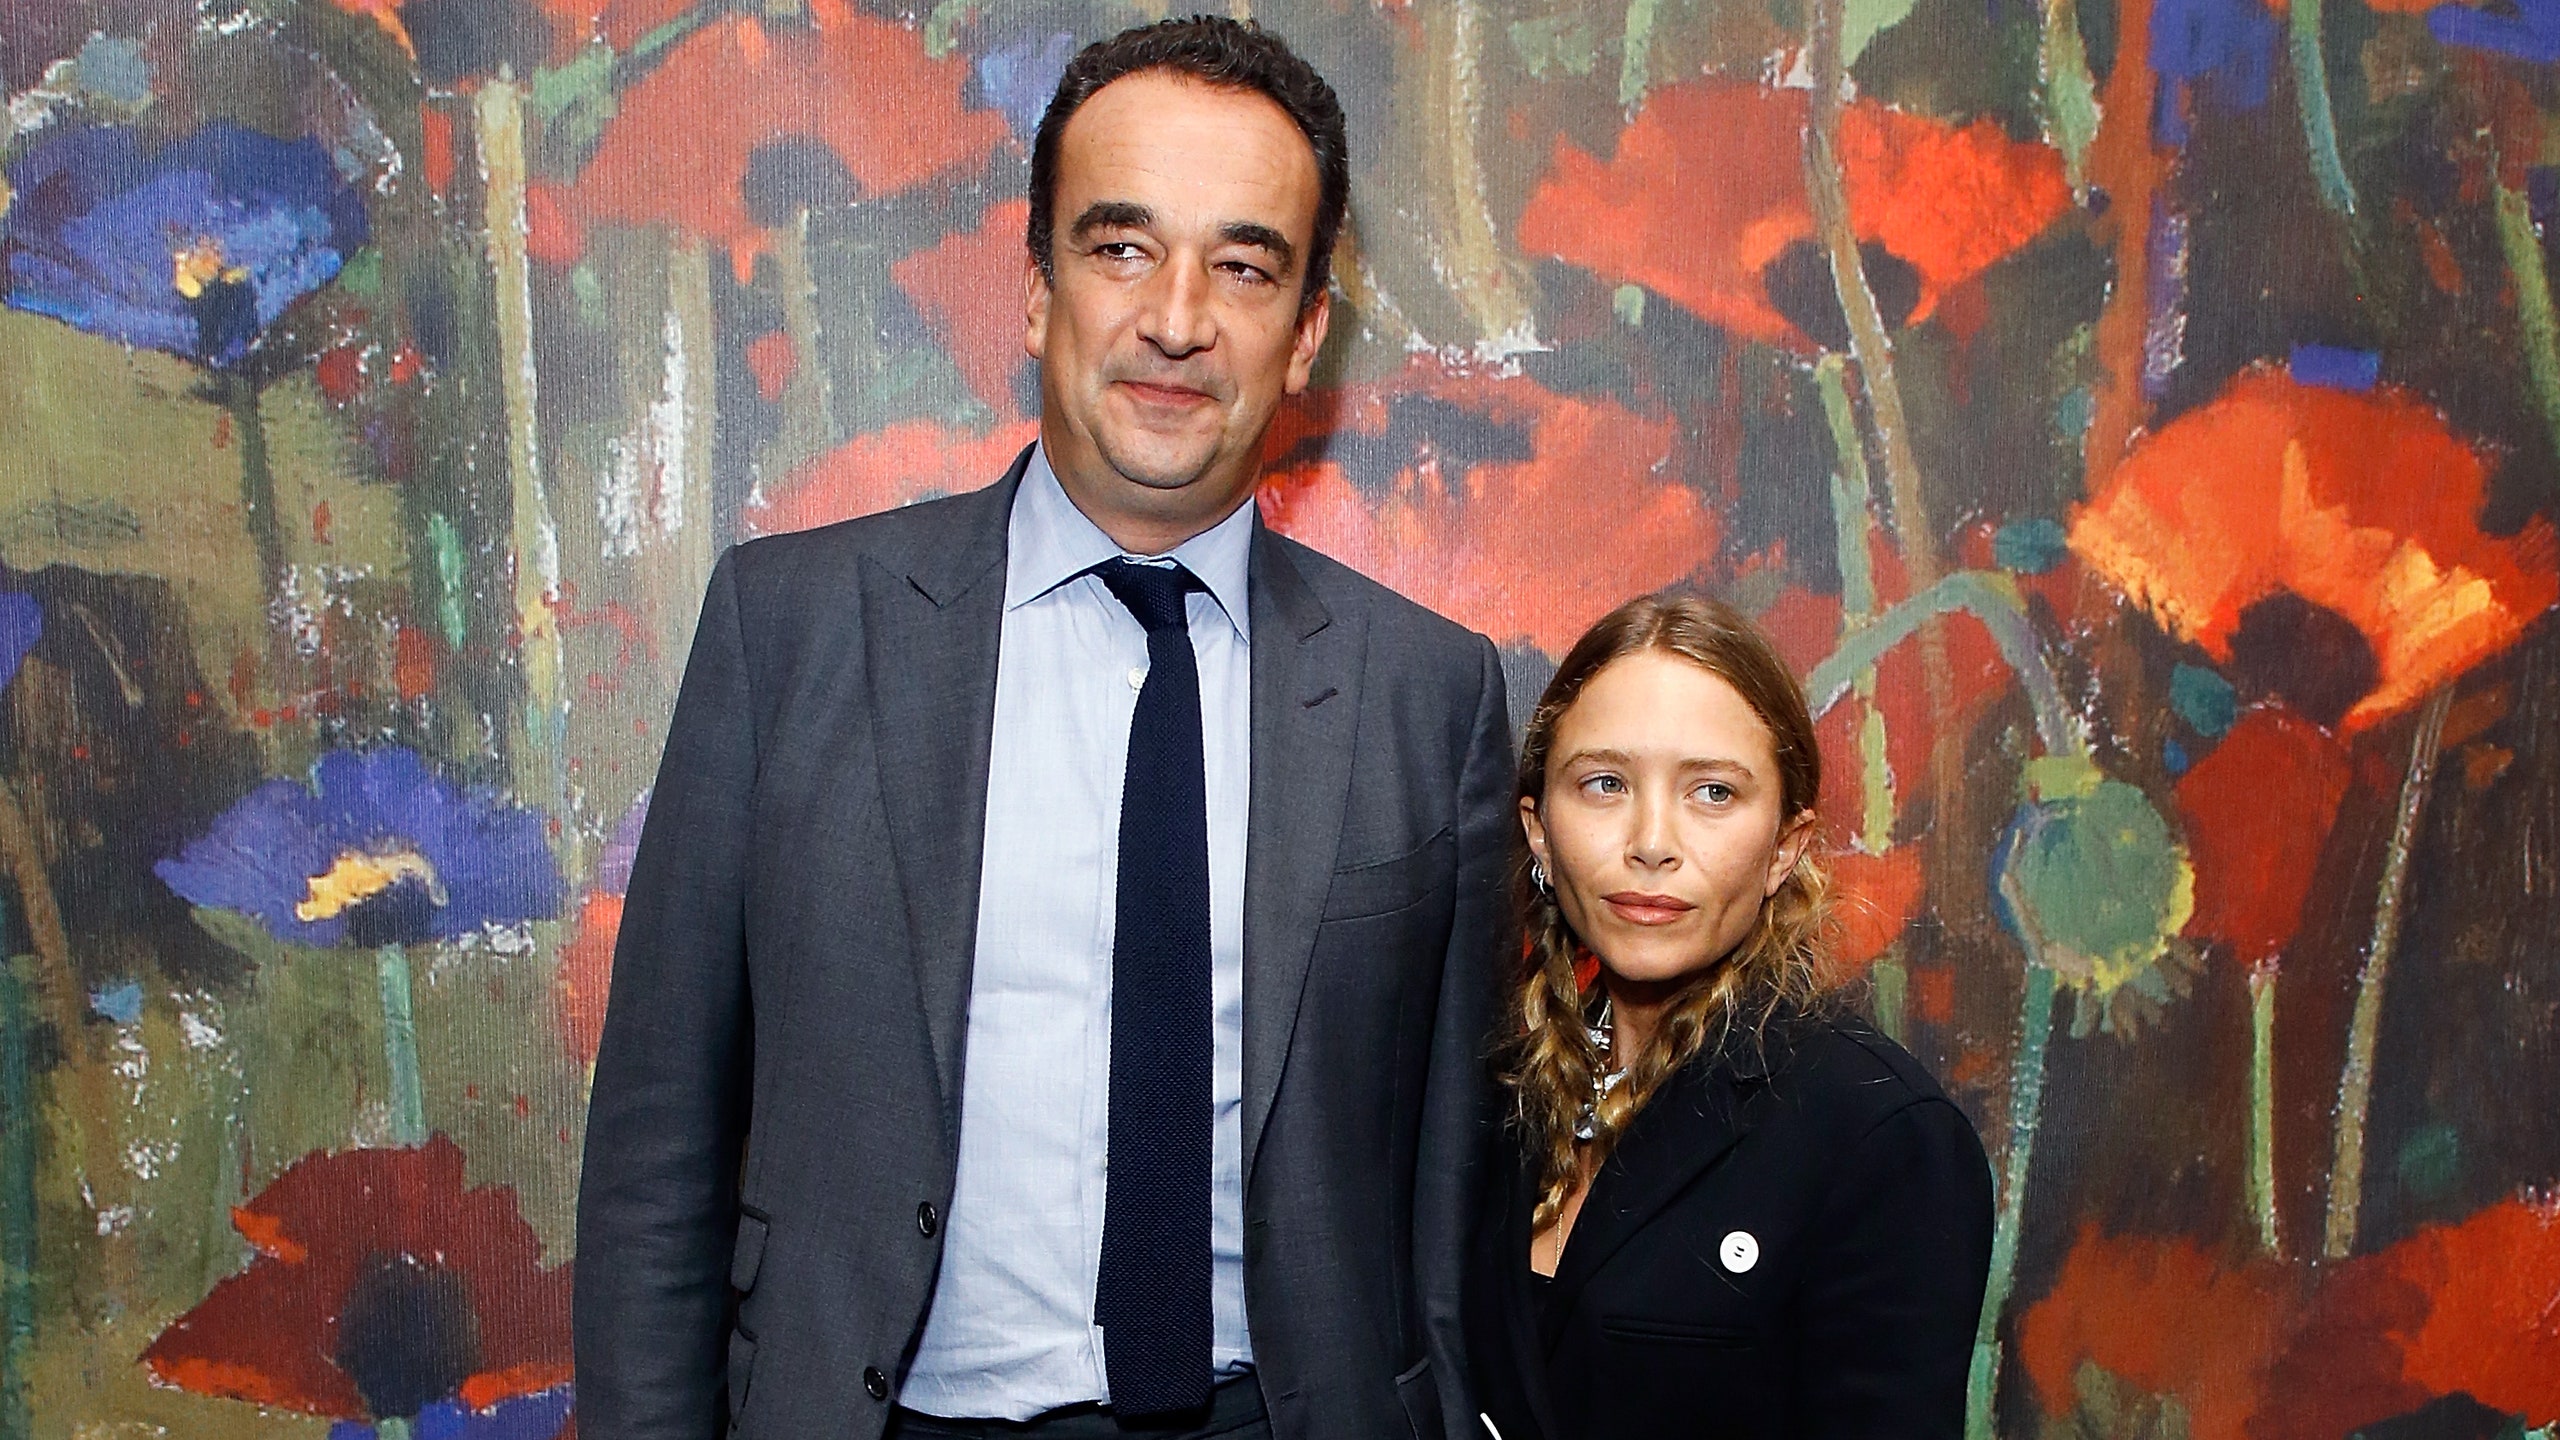 МэриКейт Олсен хочет в срочном порядке развестись с Оливье Саркози